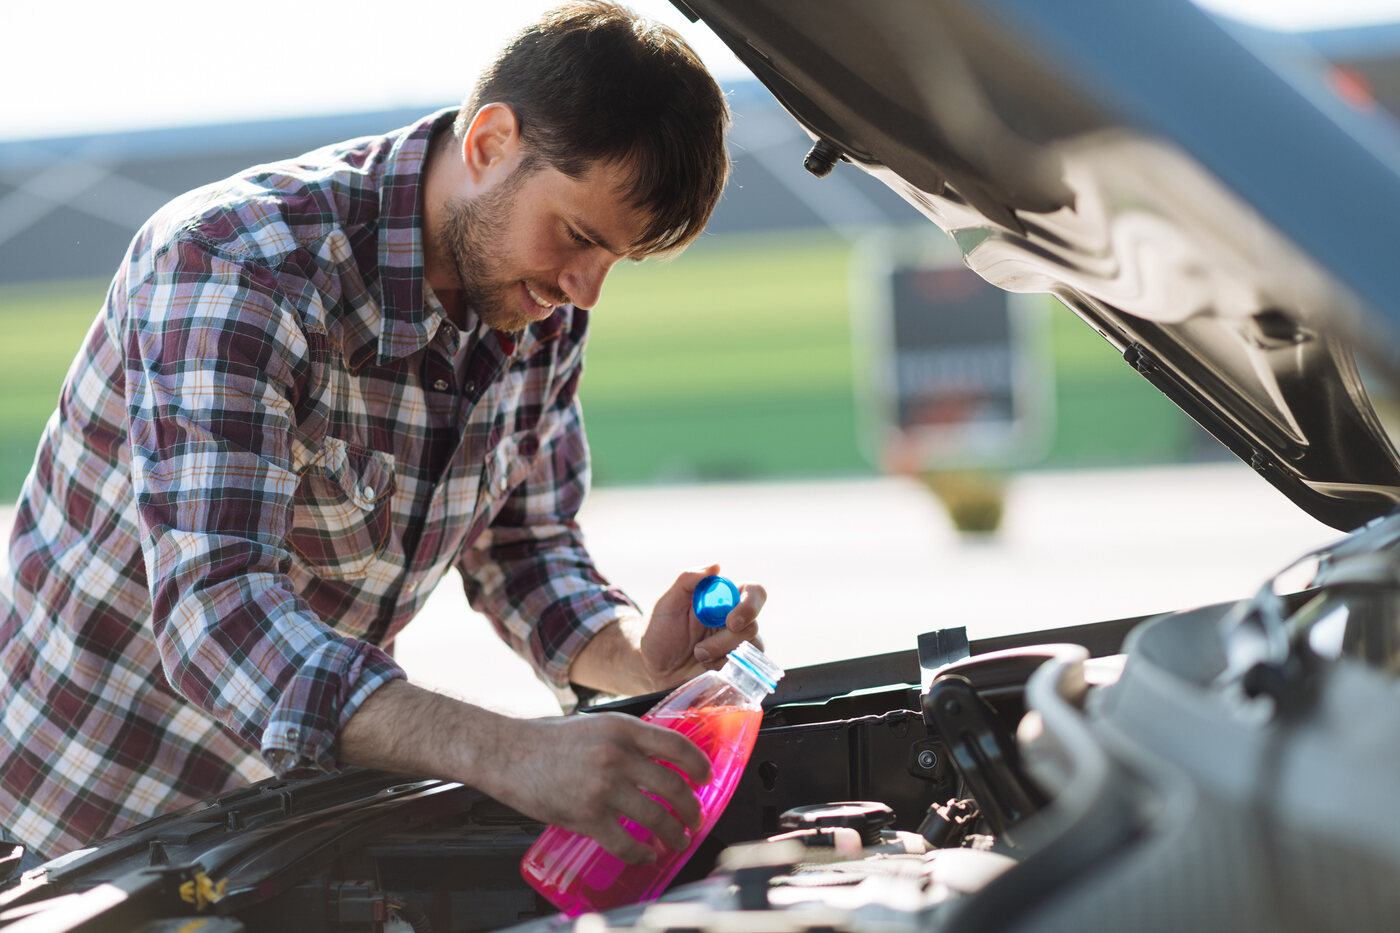 Qué es el líquido refrigerante del coche y para qué sirve?